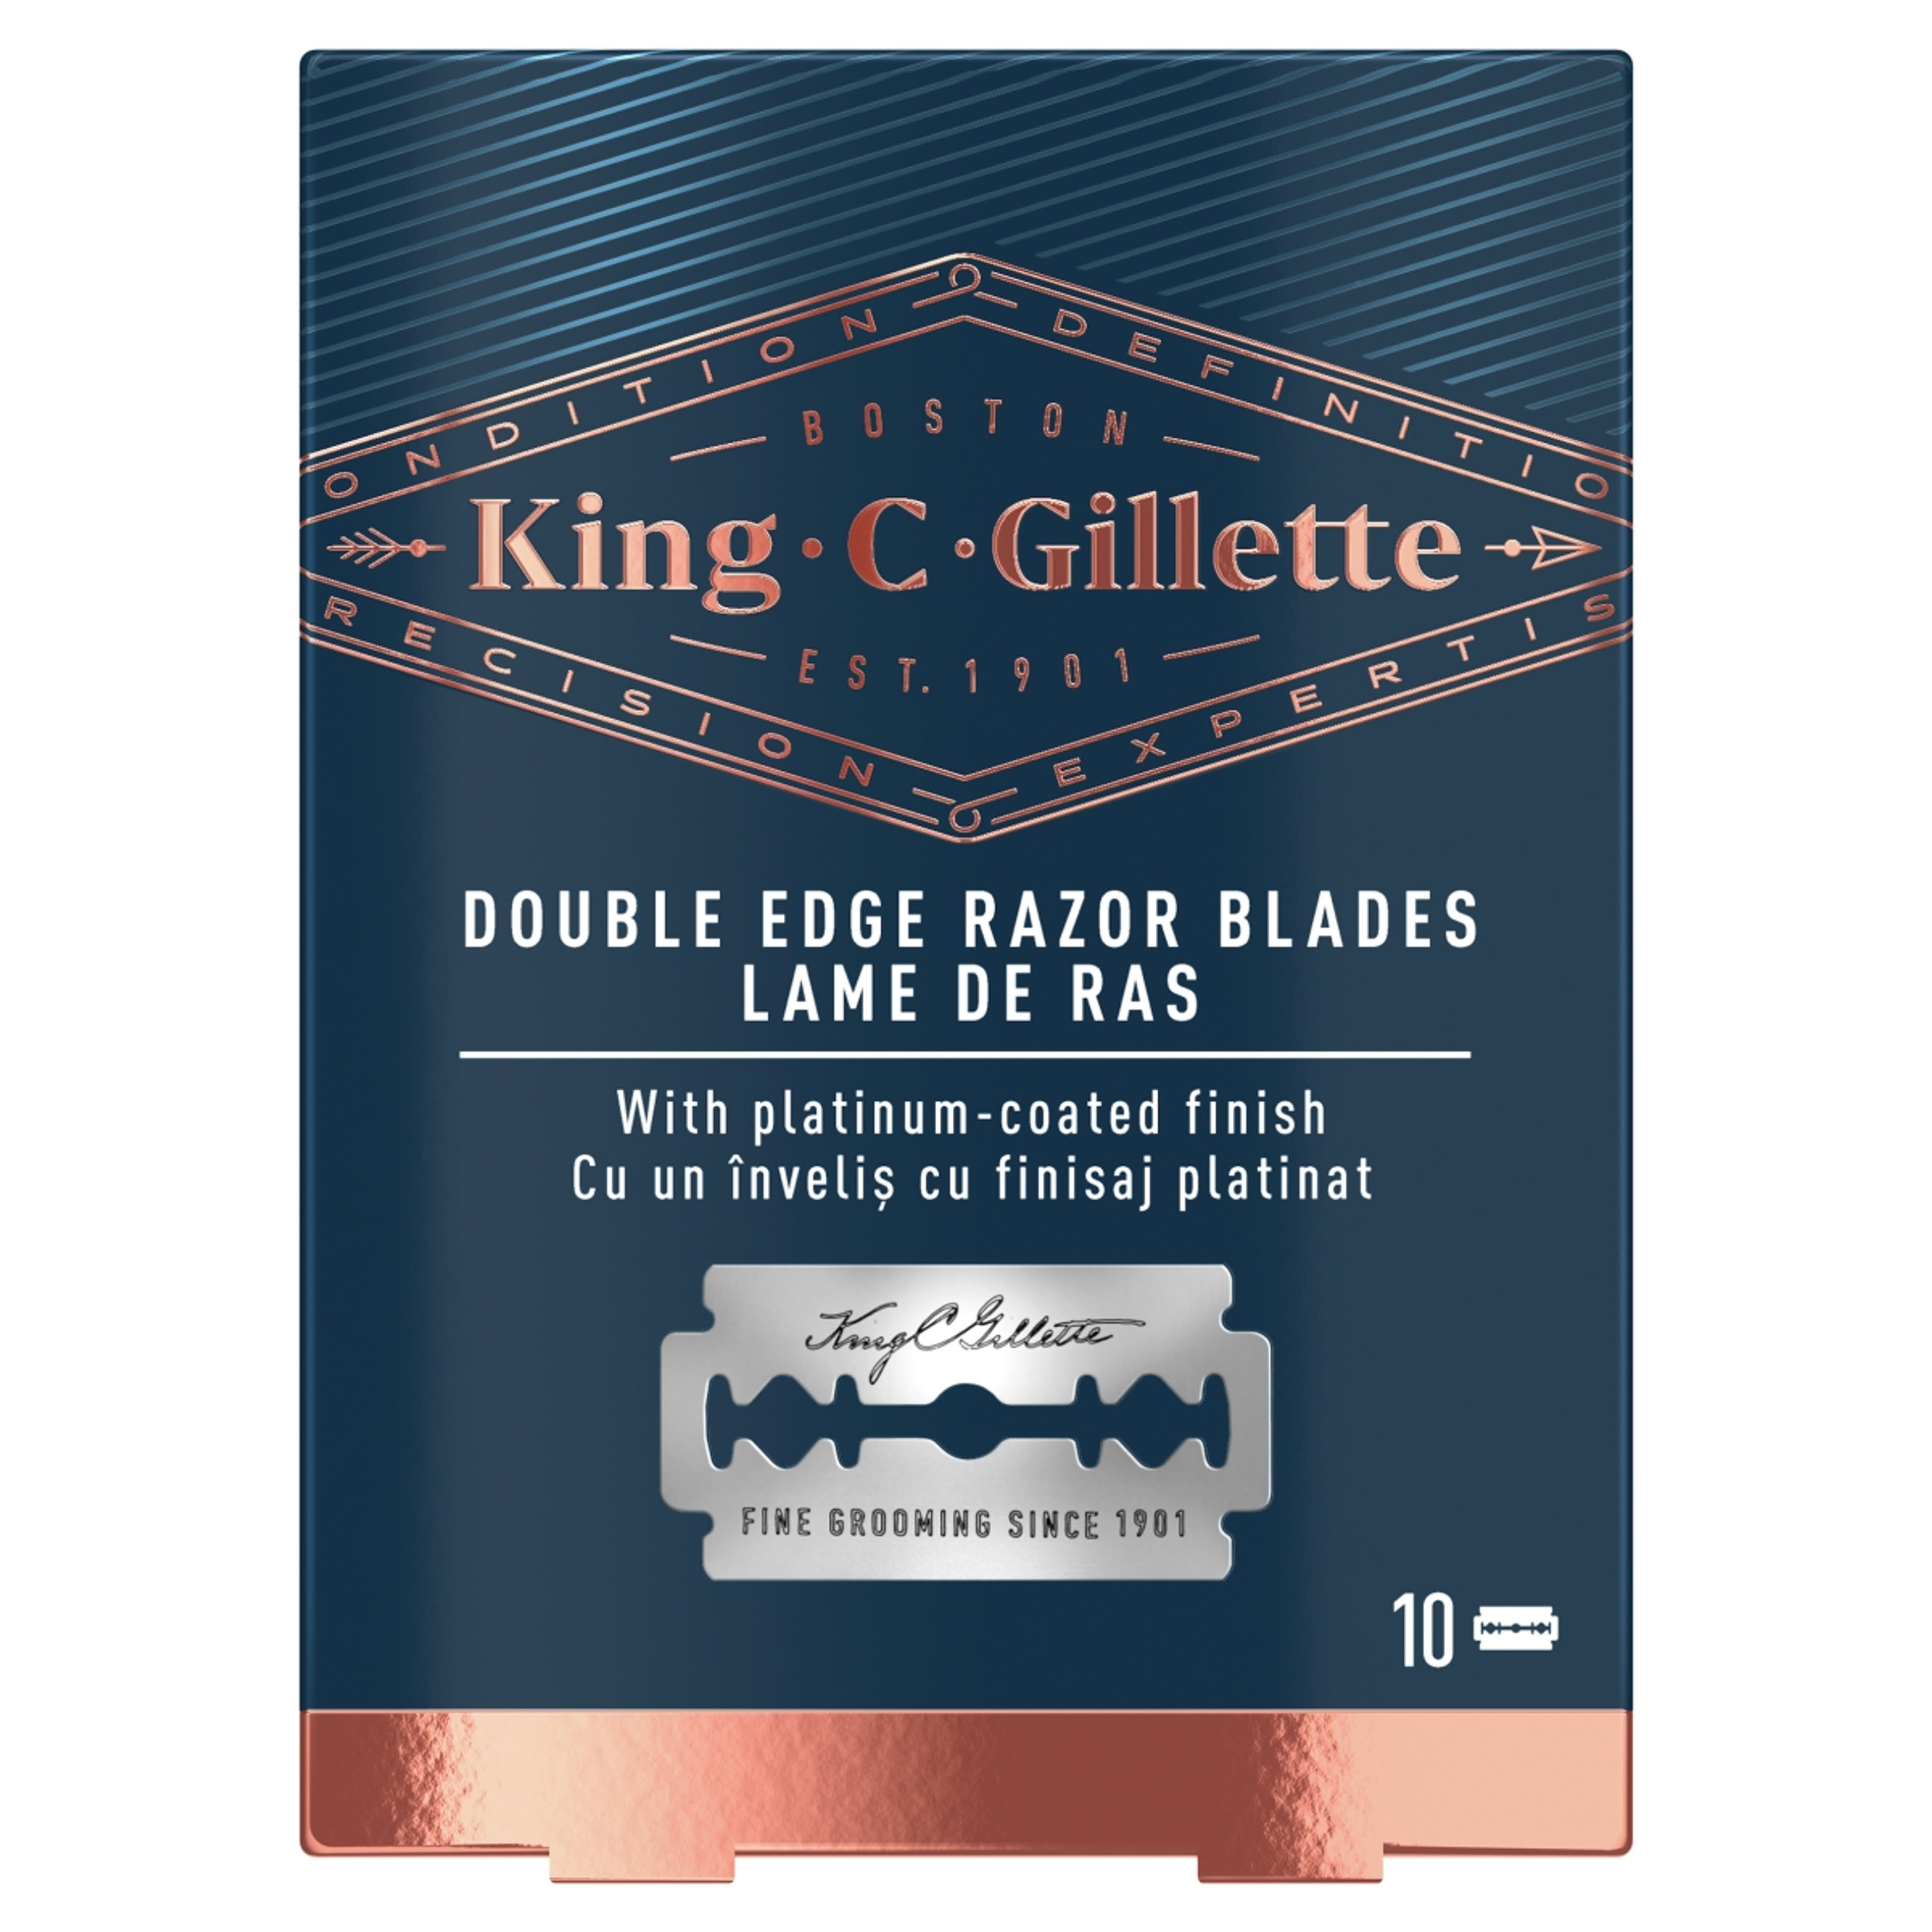 Gillette King C. Double Edge borotvabetét - 10 db